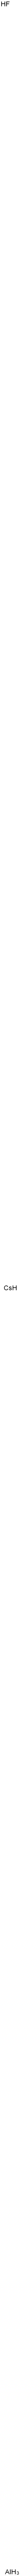 セシウムテトラフルオロアルミナ-ト 化学構造式